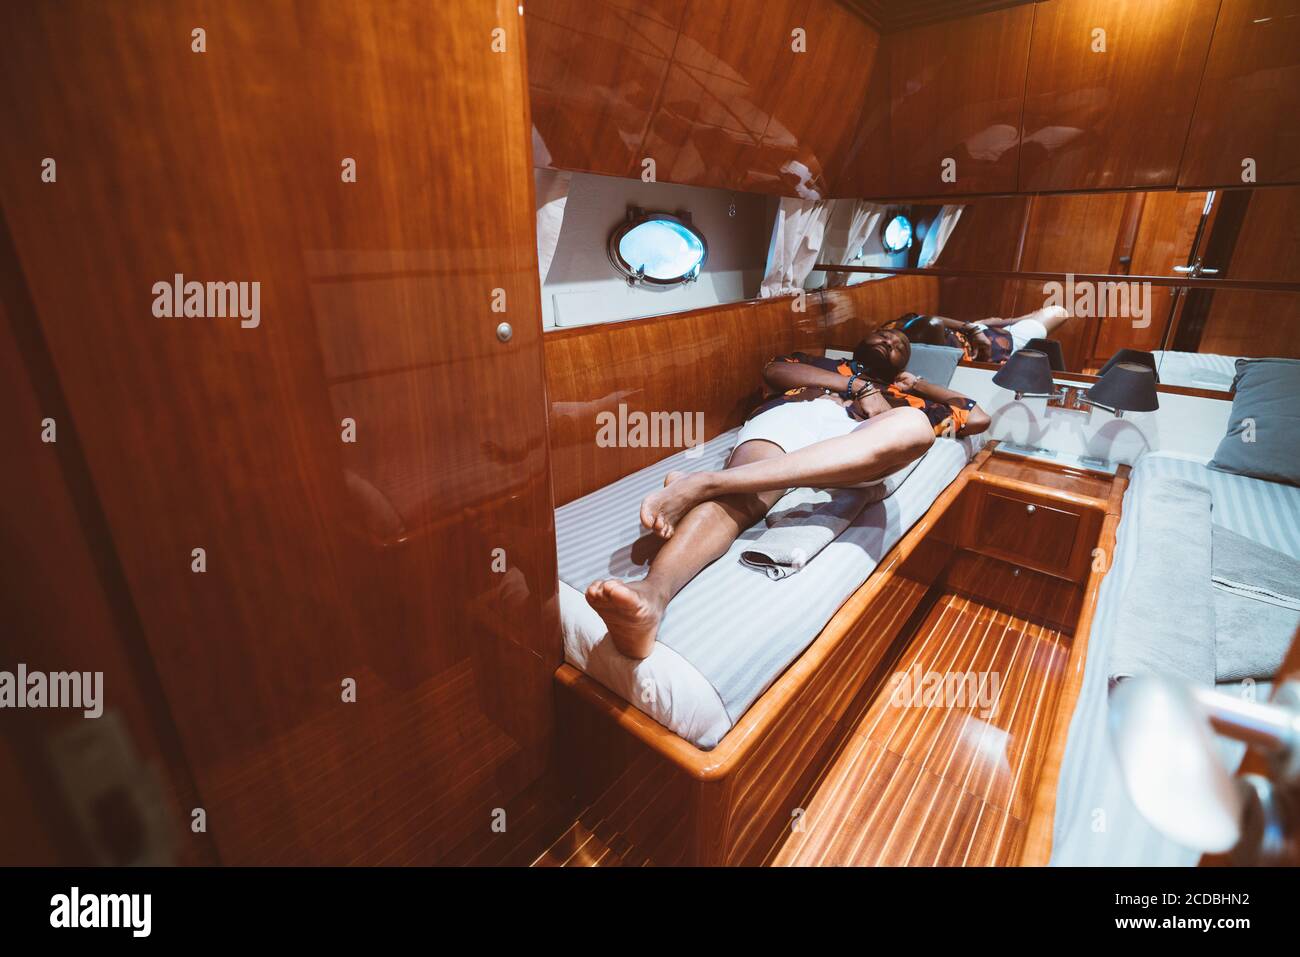 Ein reicher unbeschwerter bärtiger schwarzer Kerl in Shorts liegt auf einem Bett in einer Kabine einer Luxusyacht mit Bullauge, Betten, reflektierenden Holzwänden Stockfoto